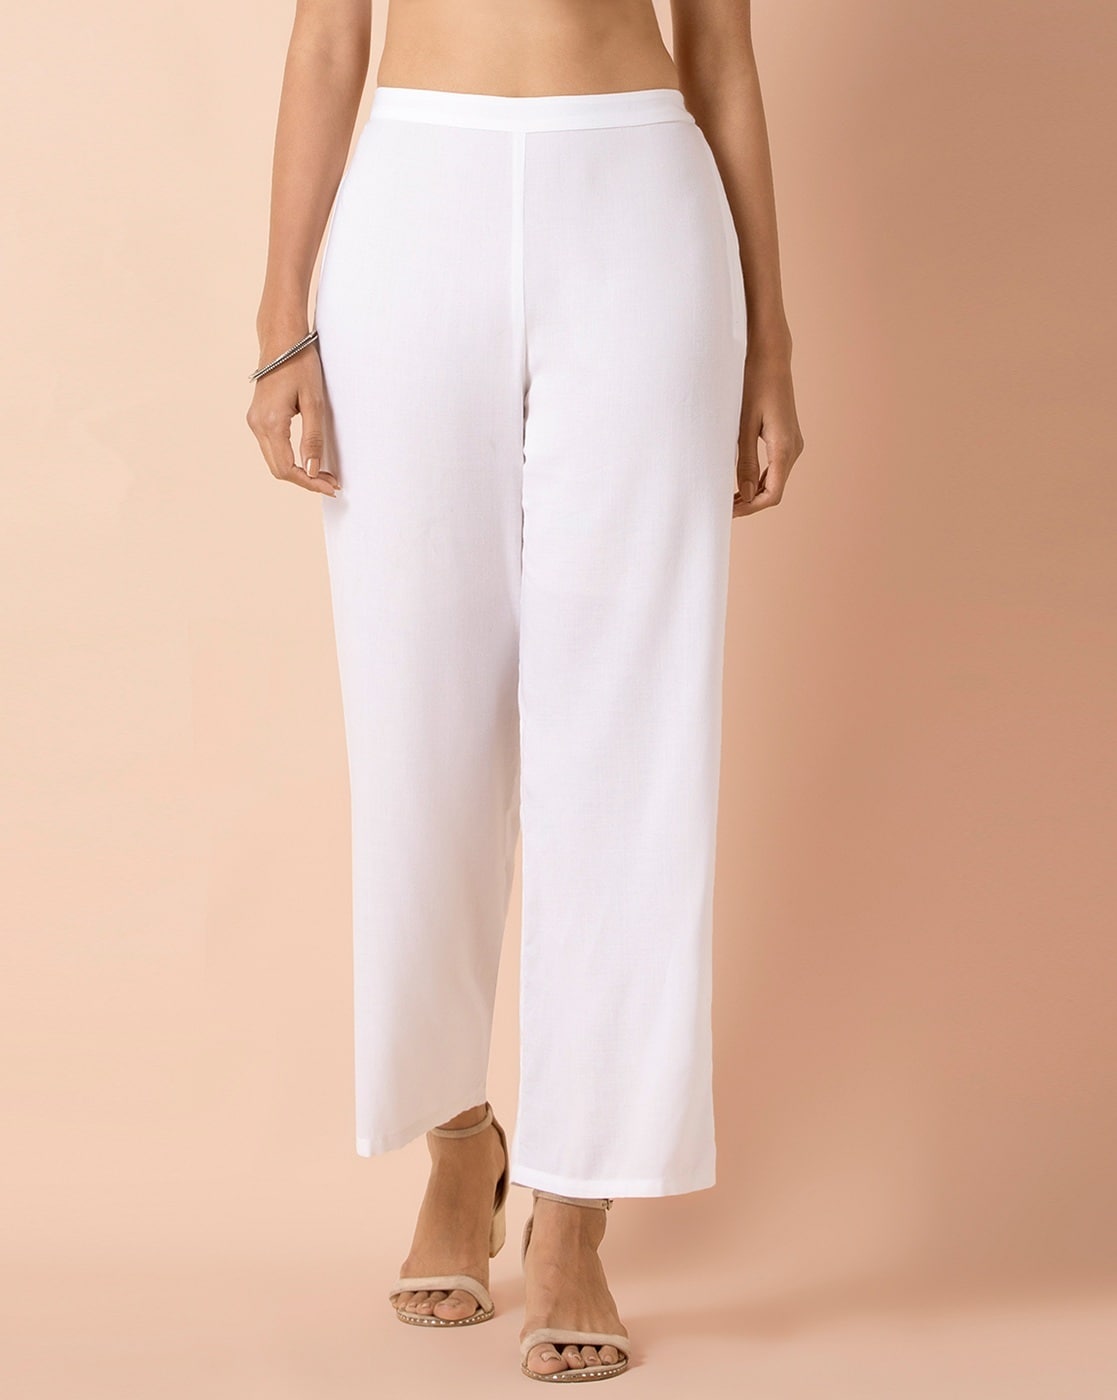 Buy Beige Pants for Women by AVAASA MIX N MATCH Online  Ajiocom